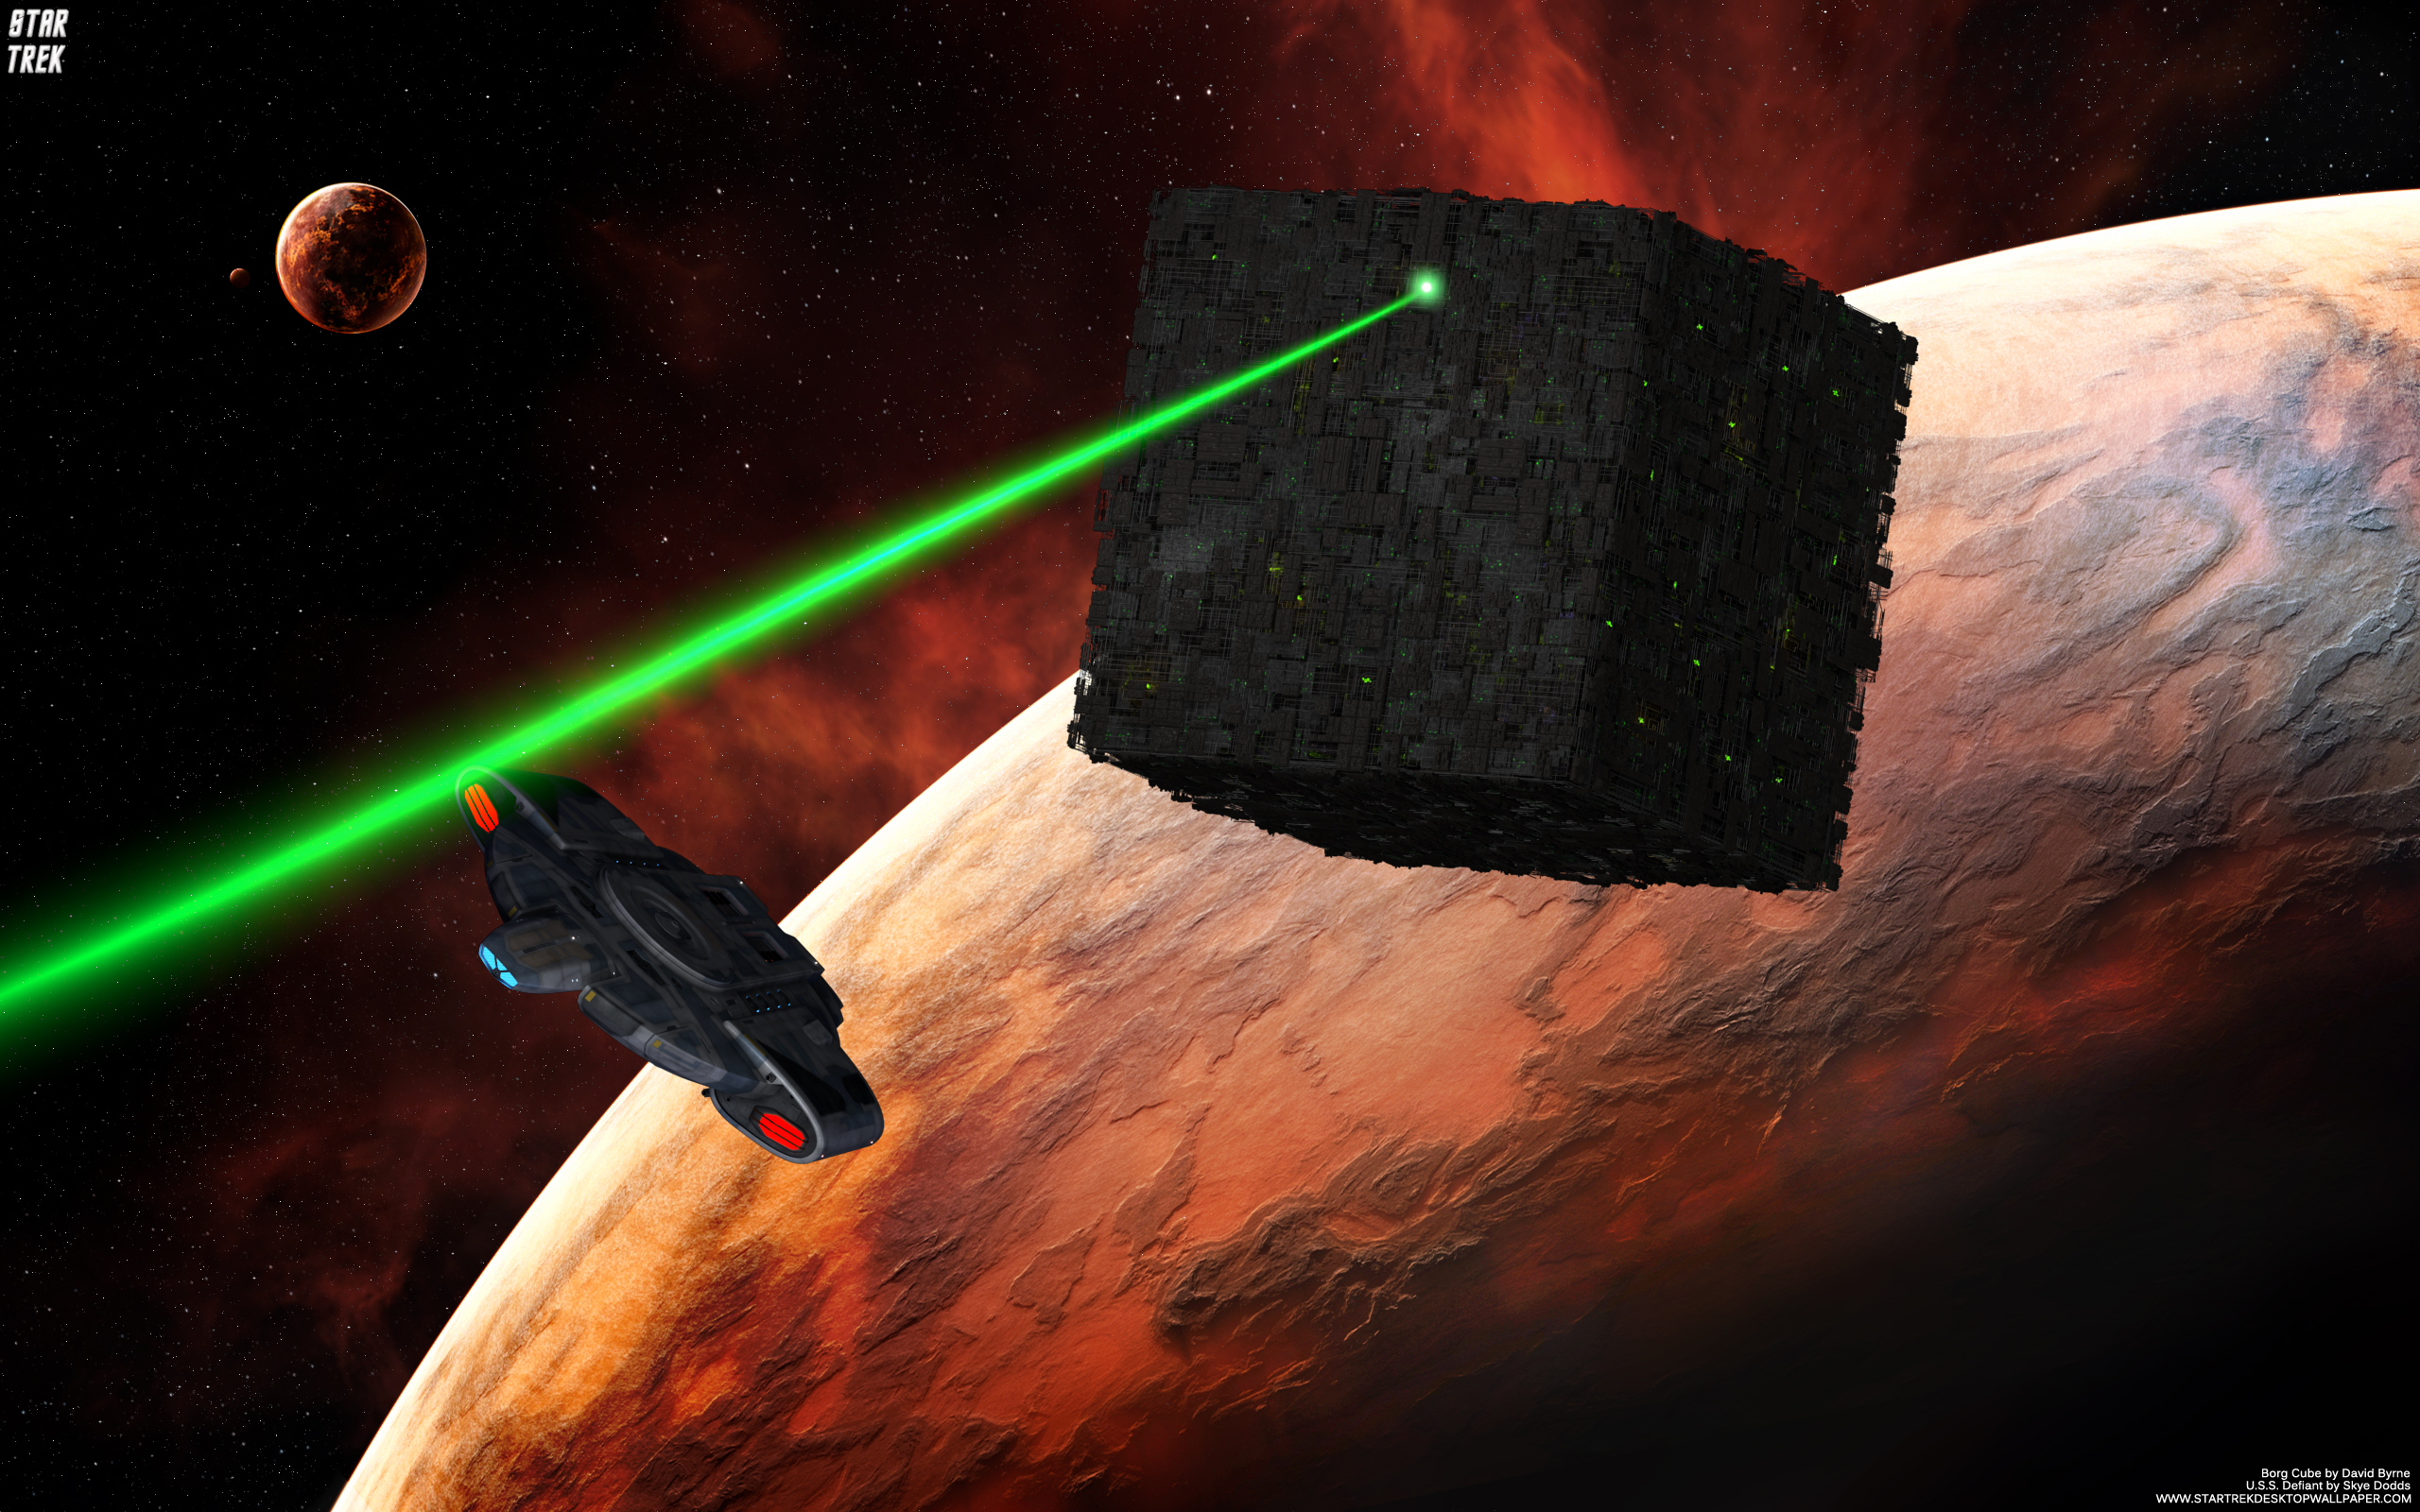 Star Trek Borg Cube Chasing Uss Defiant